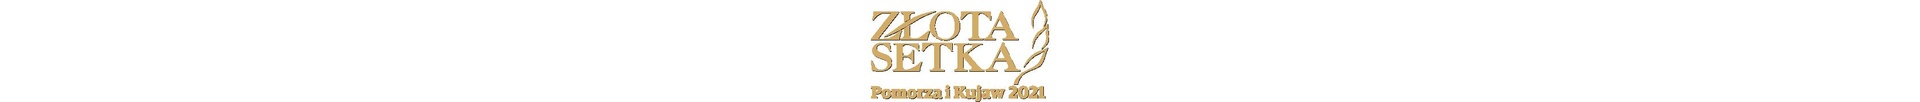 Złota Setka Pomorza i Kujaw - www.pomorska.pl